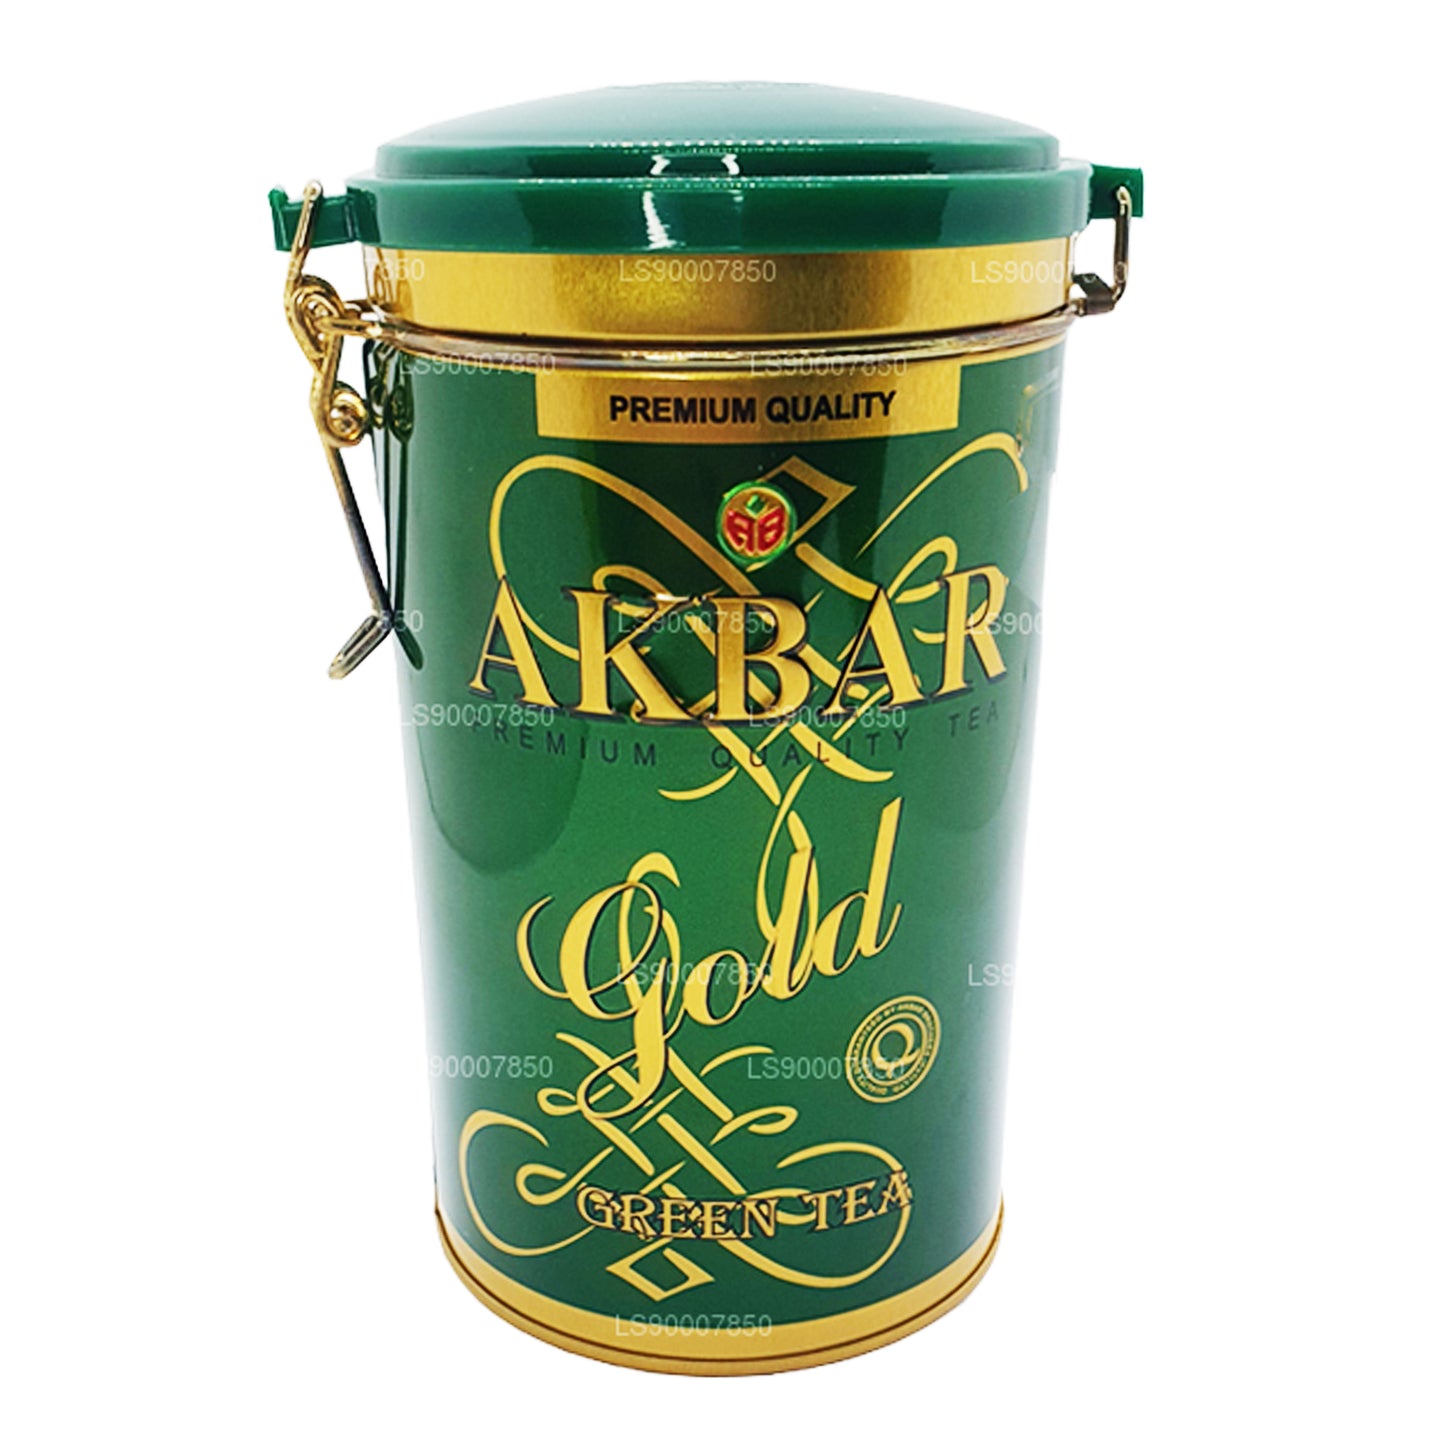 Akbar Altın Yeşil Çay Yaprağı Çay (275g) Teneke